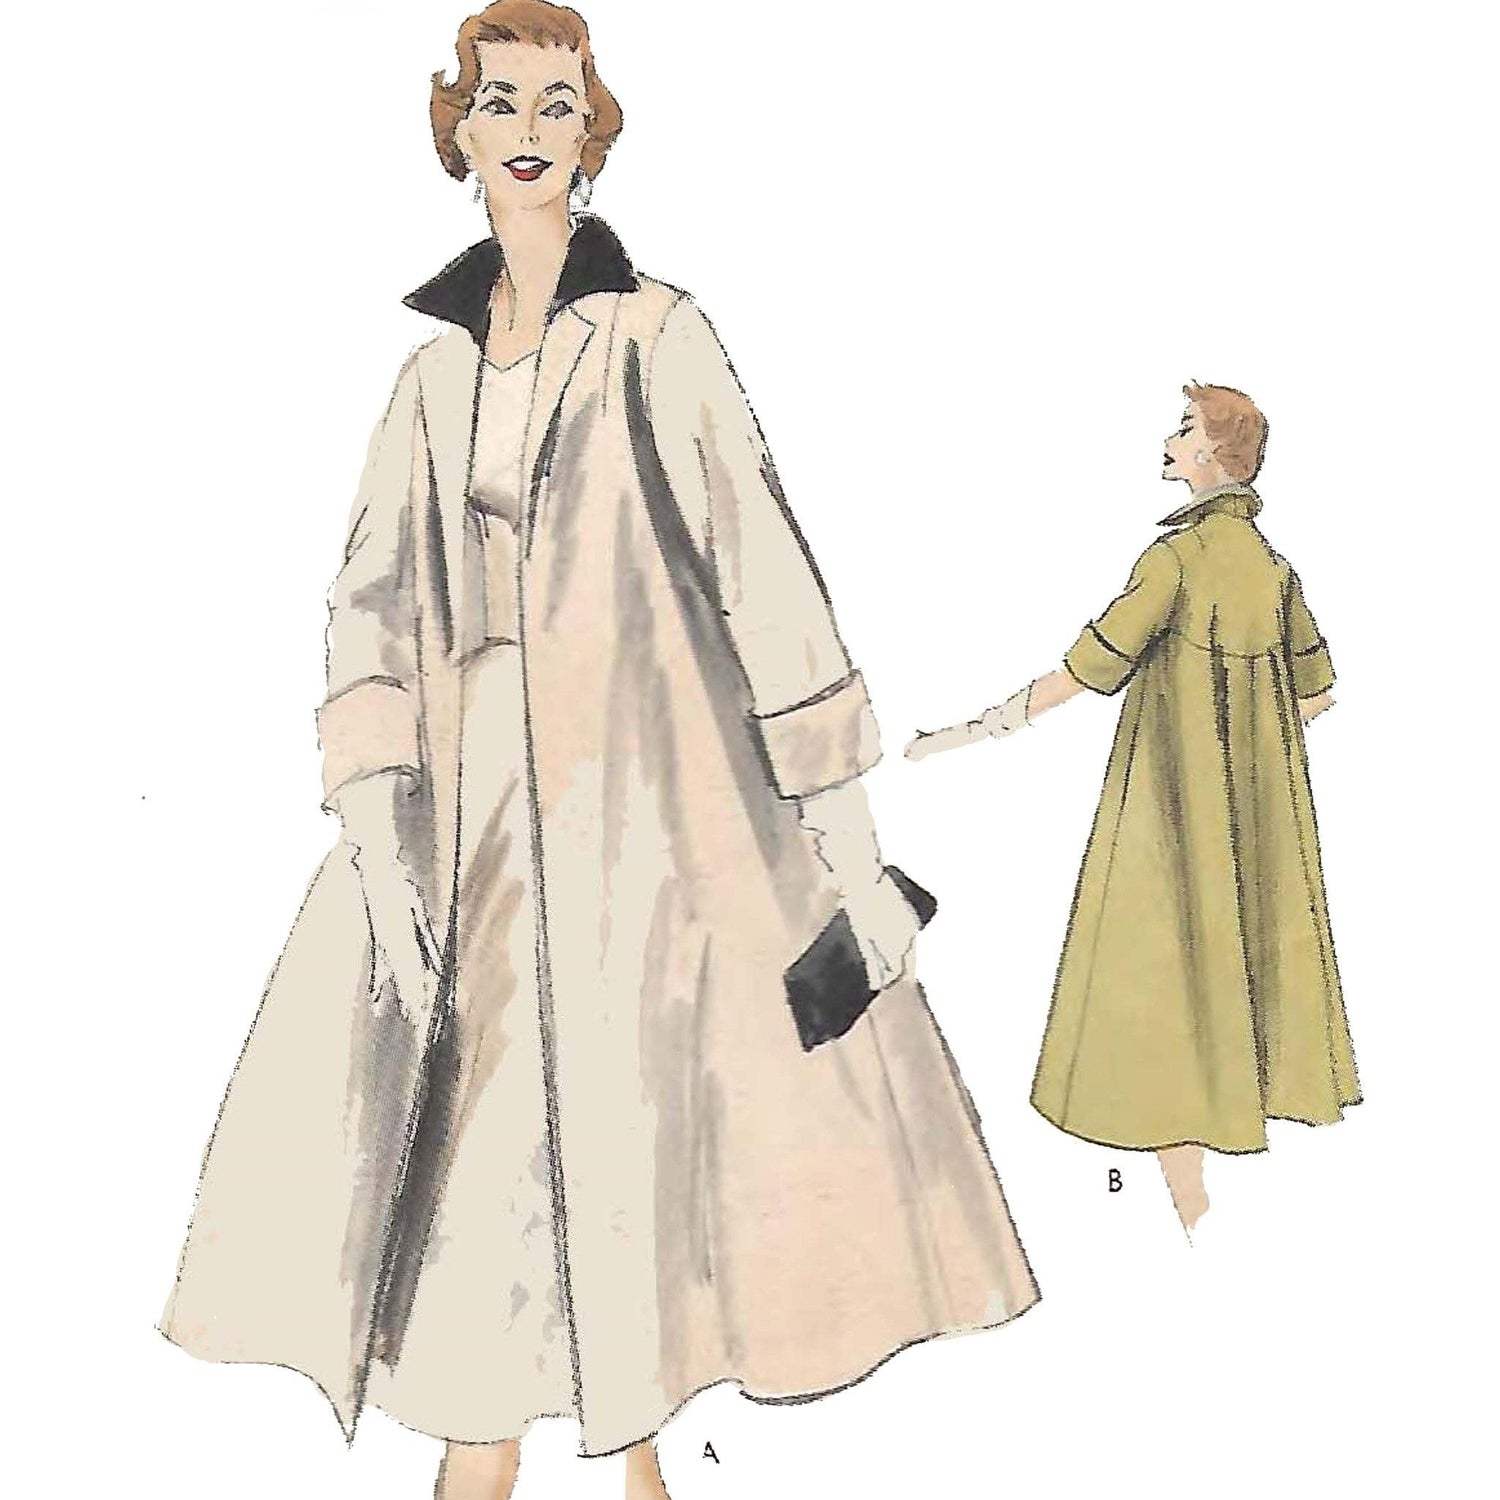 Women wearing coats